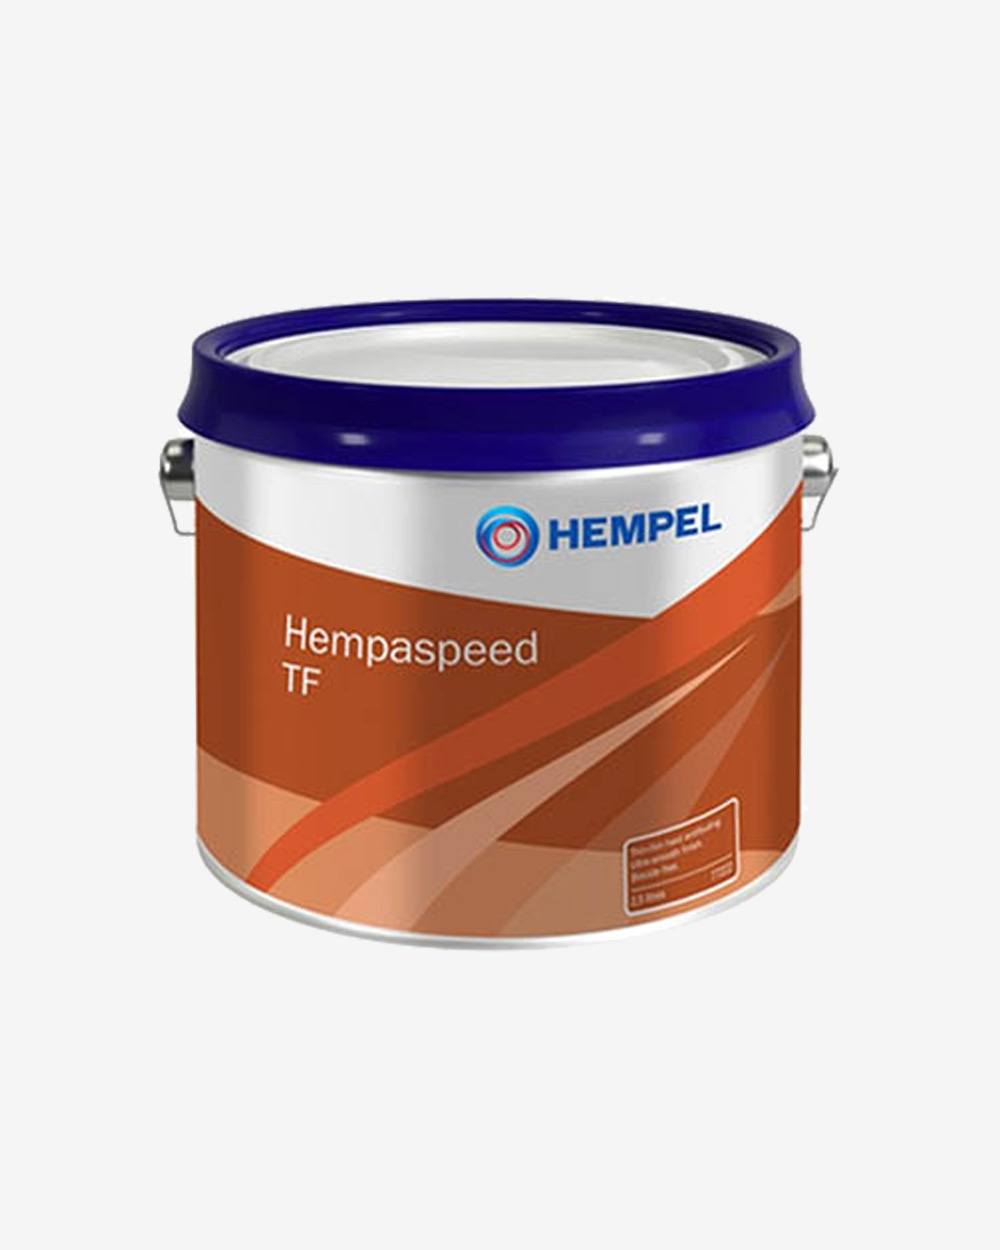 Se Hempel Hempaspeed Penta Grey - 2,5 liter hos Picment.dk